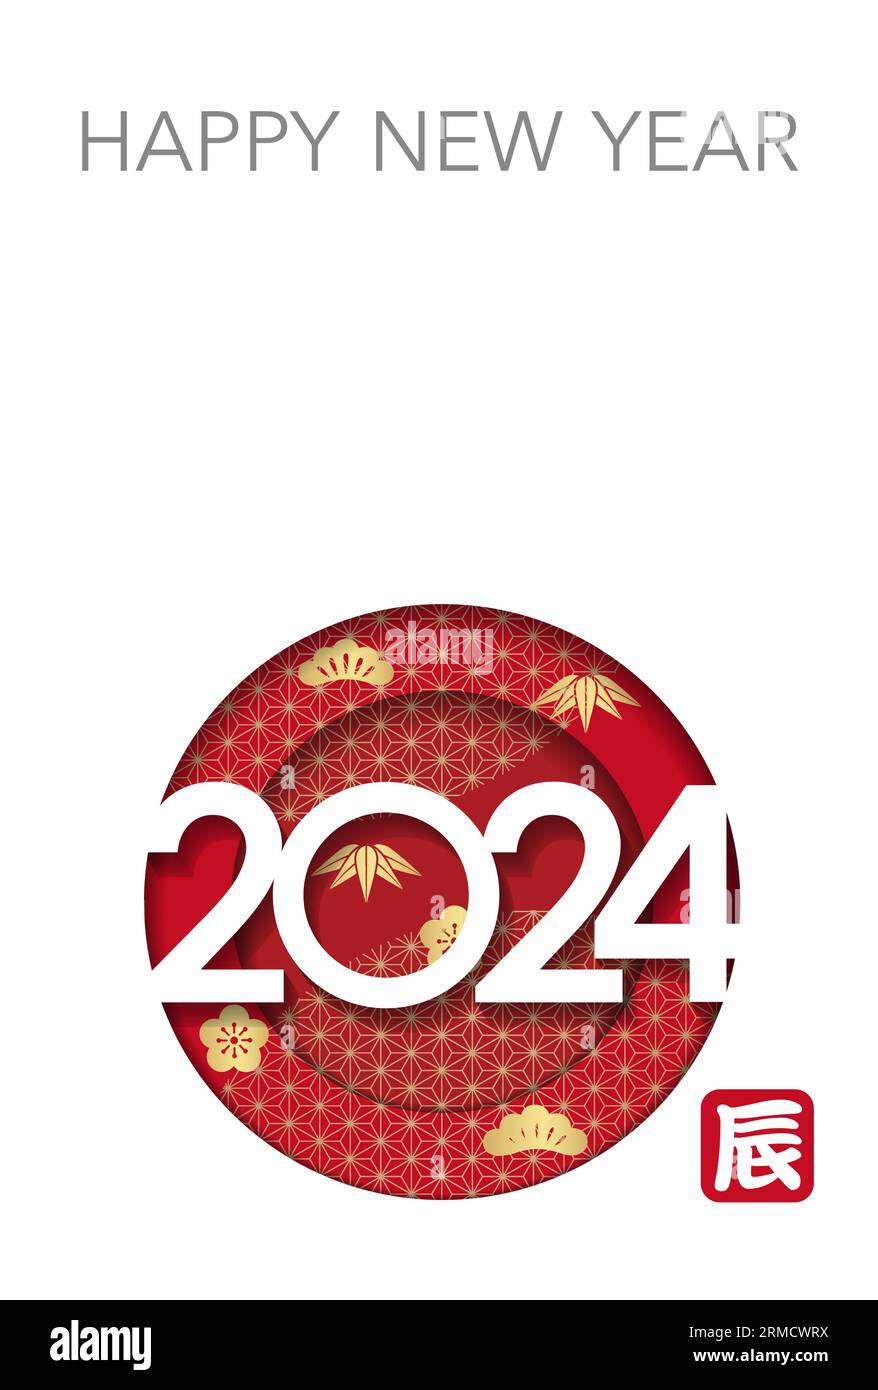 The Year 2024, Year of the Dragon, Grußkartenvorlage mit 3D Relief Symbol und Textraum. Kanji-Textübersetzung - Der Drache. Stock Vektor